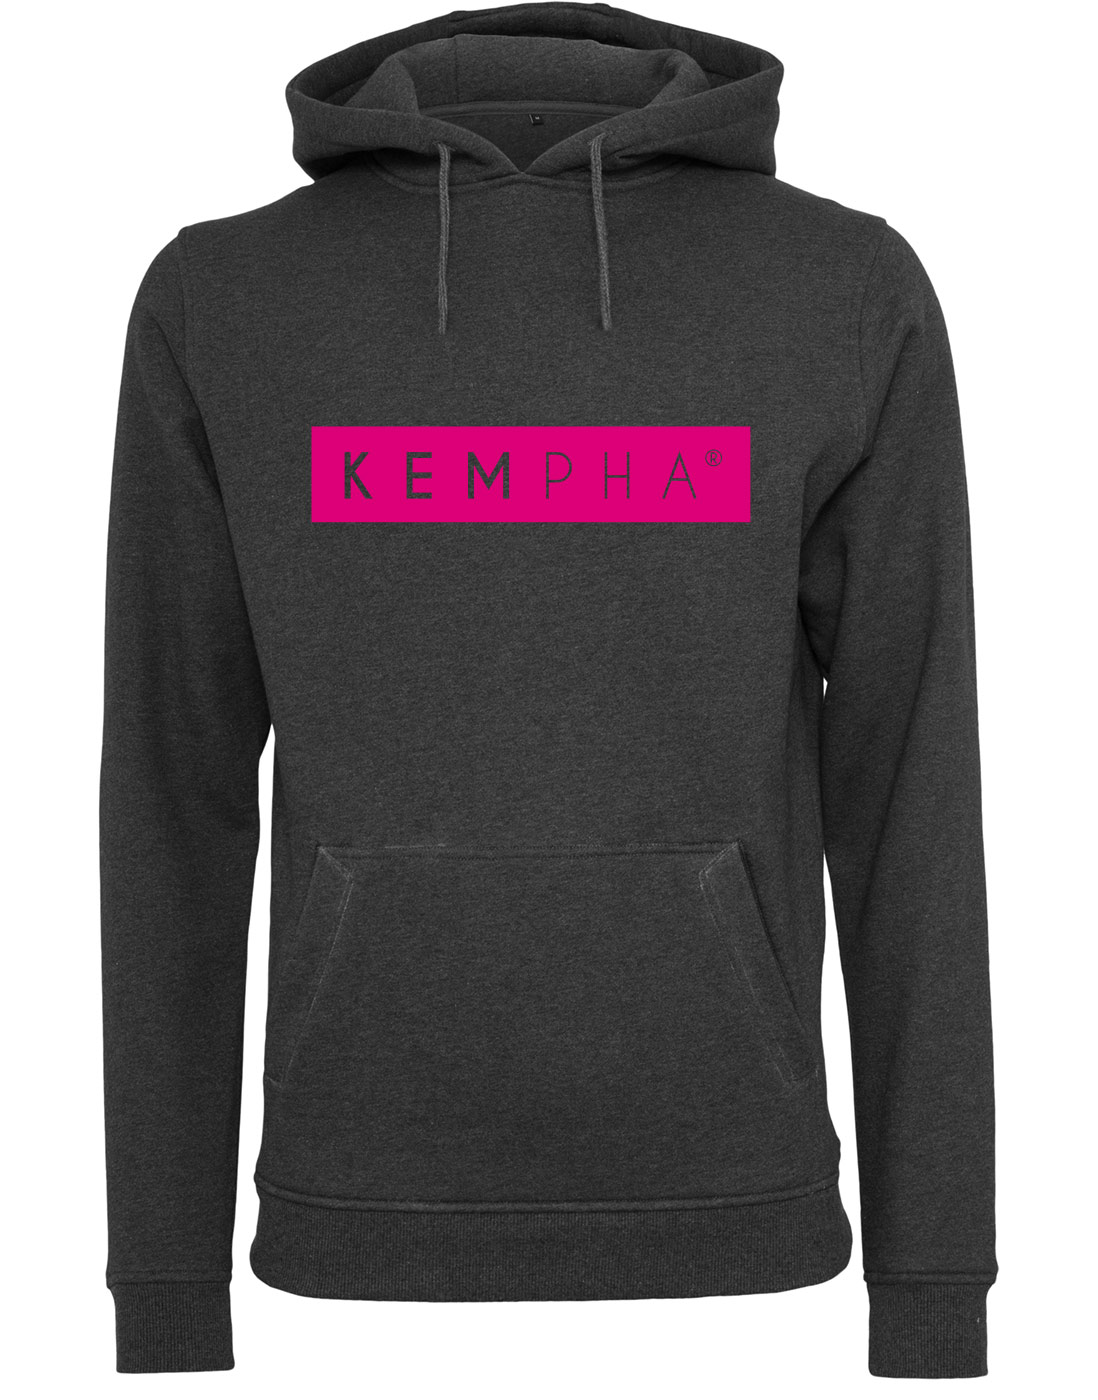 Kempha Premium Hoodie grau